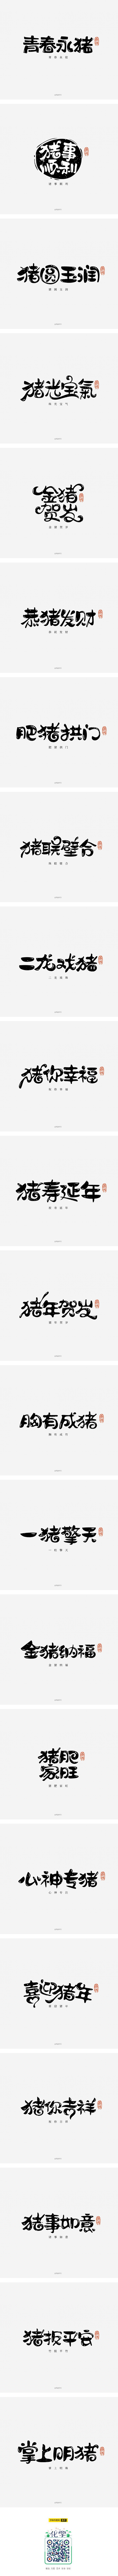 猪年福语手绘字体第一篇,提供下载可免费商...